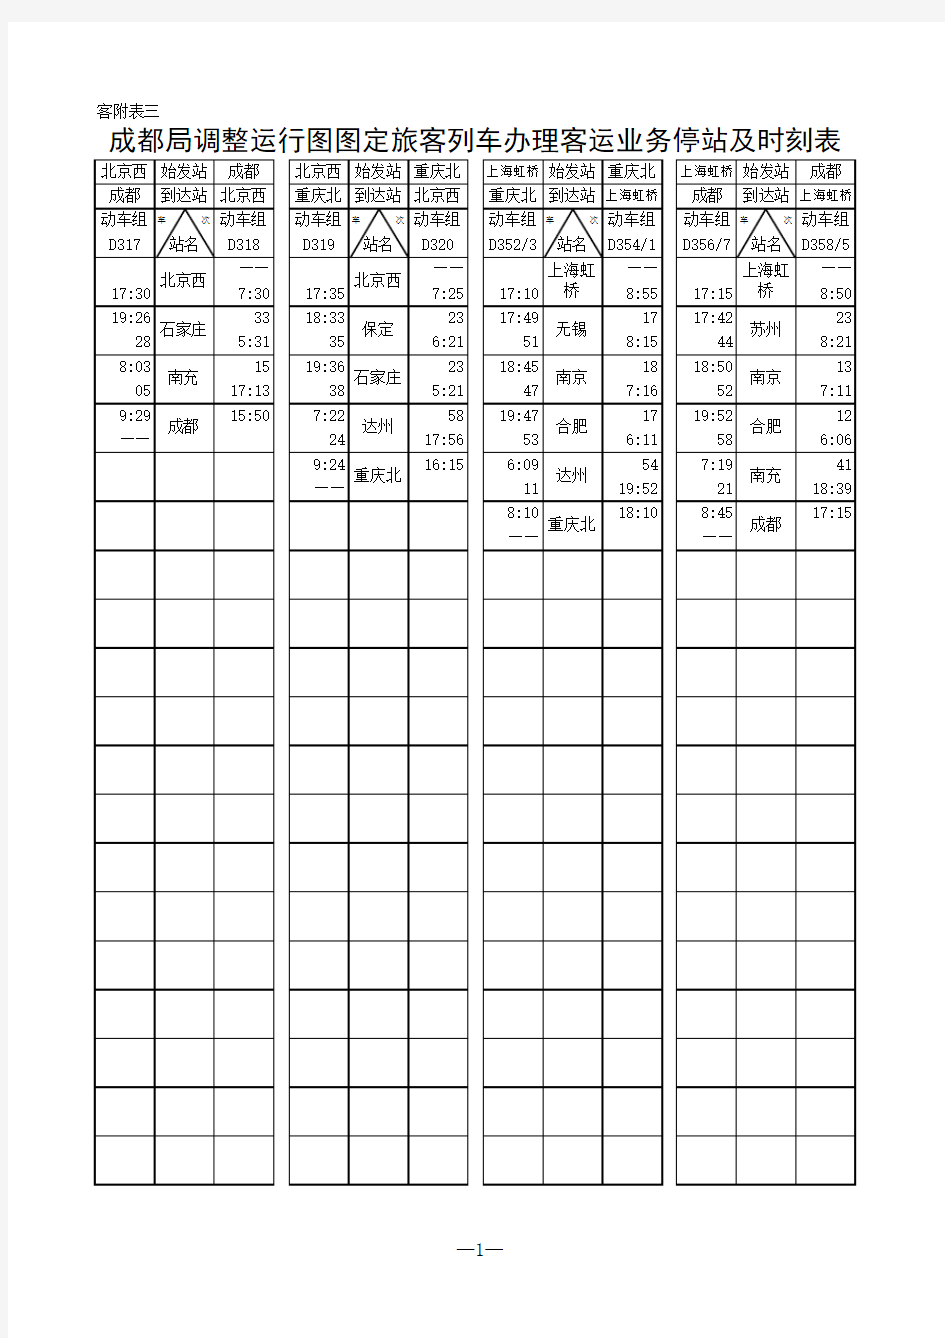 成都铁路局2011年1月11日调图时刻表